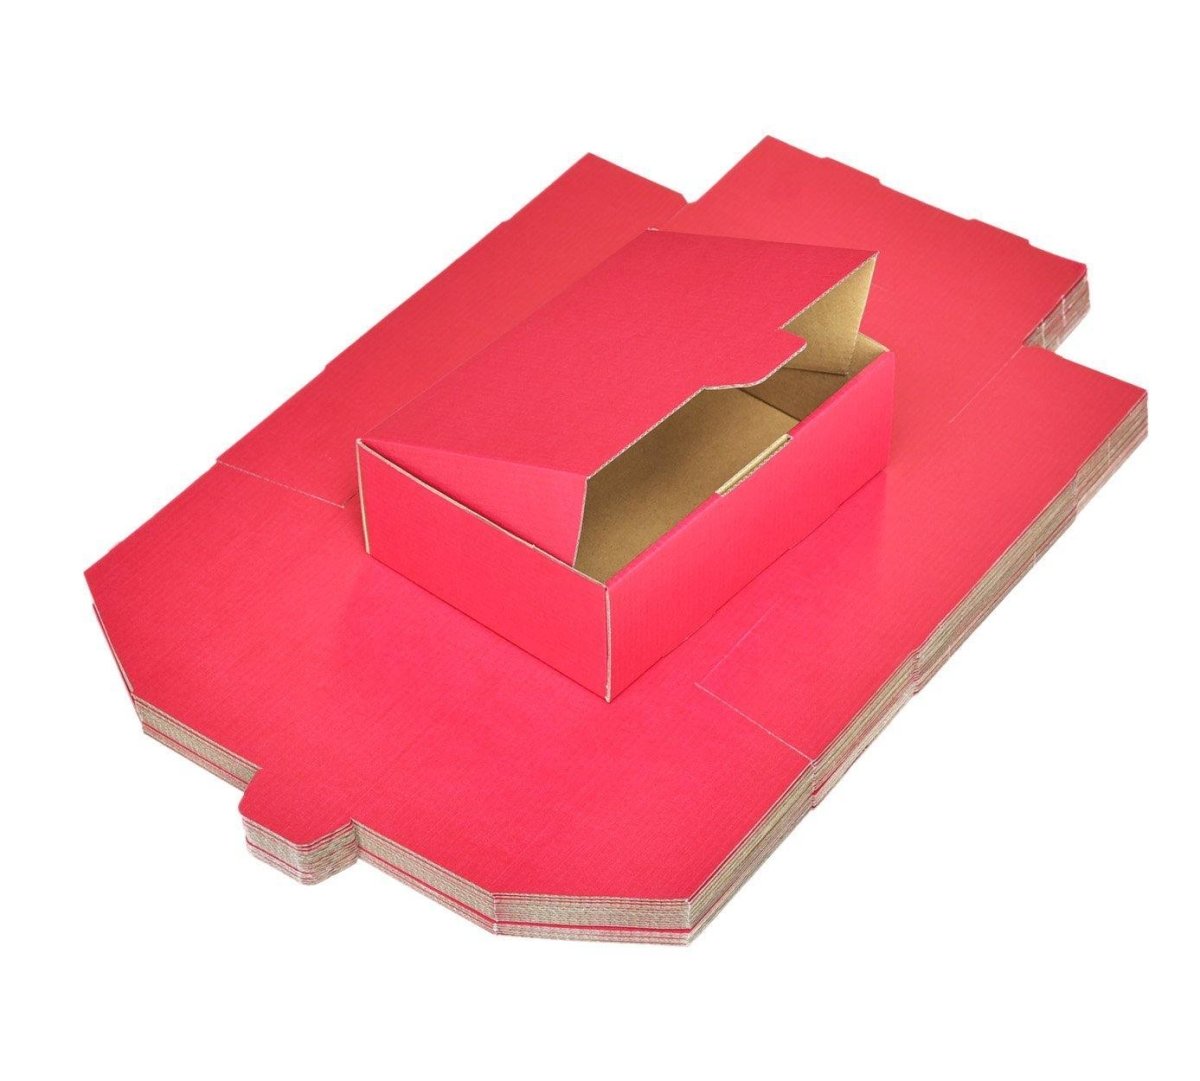 Red A5 Mailing Box 220 x 160 x 77mm B57 Diecut BoxMore